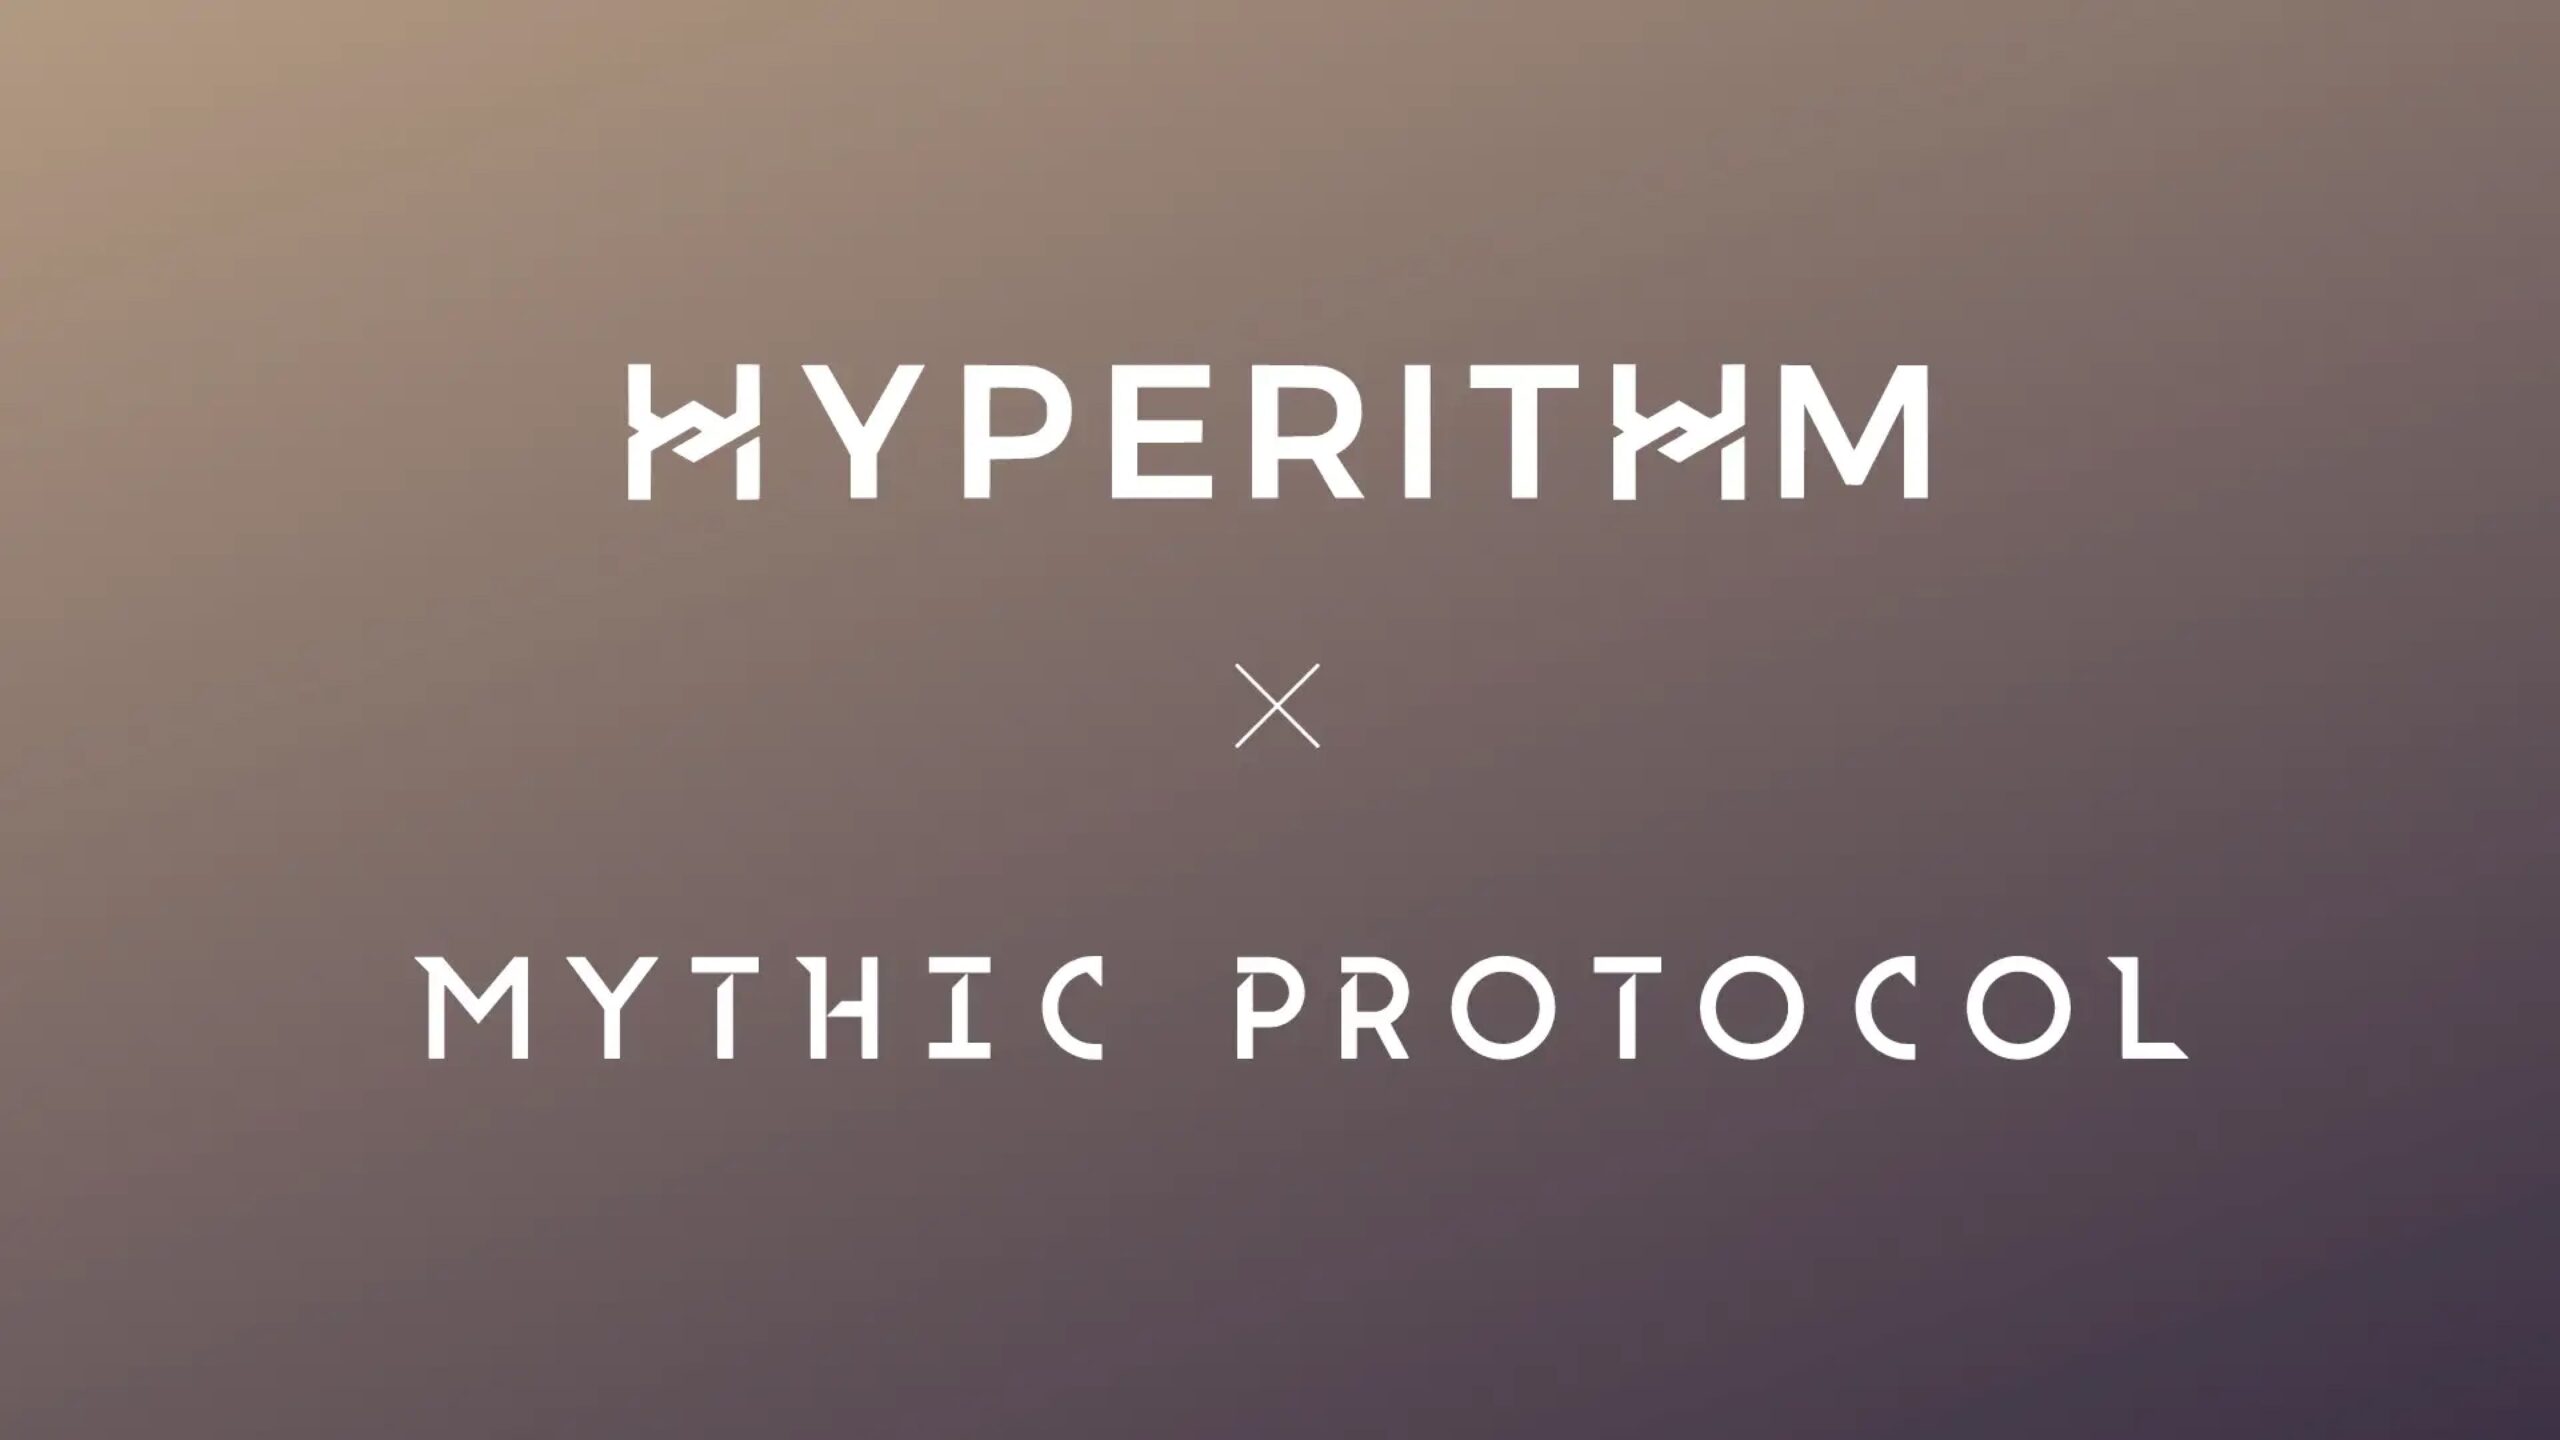 株式会社HYPERITHMが「Mythic Protocol」に出資